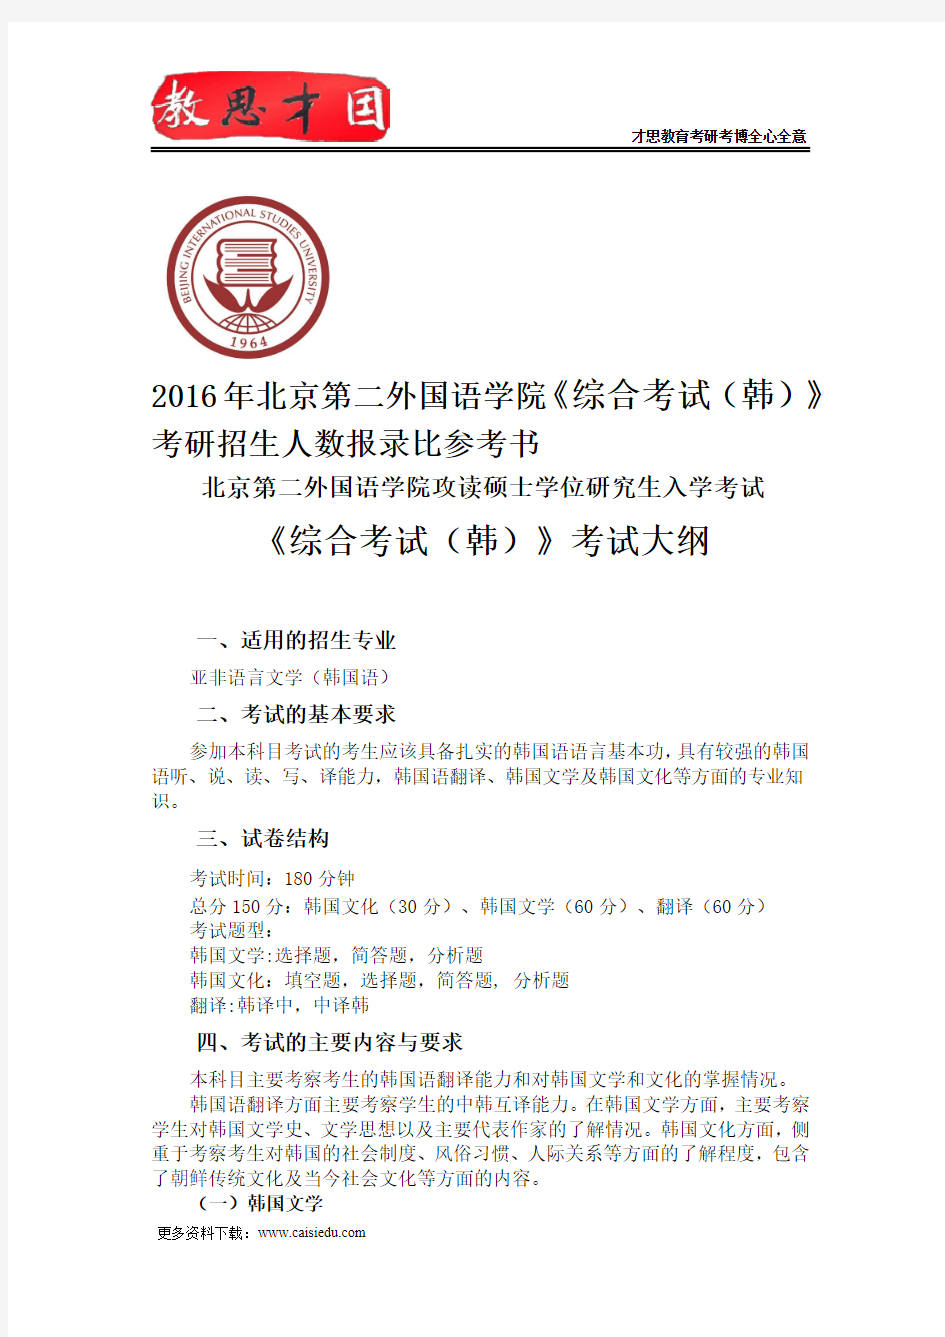 2016年北京第二外国语学院《综合考试(韩)》考研招生人数报录比参考书